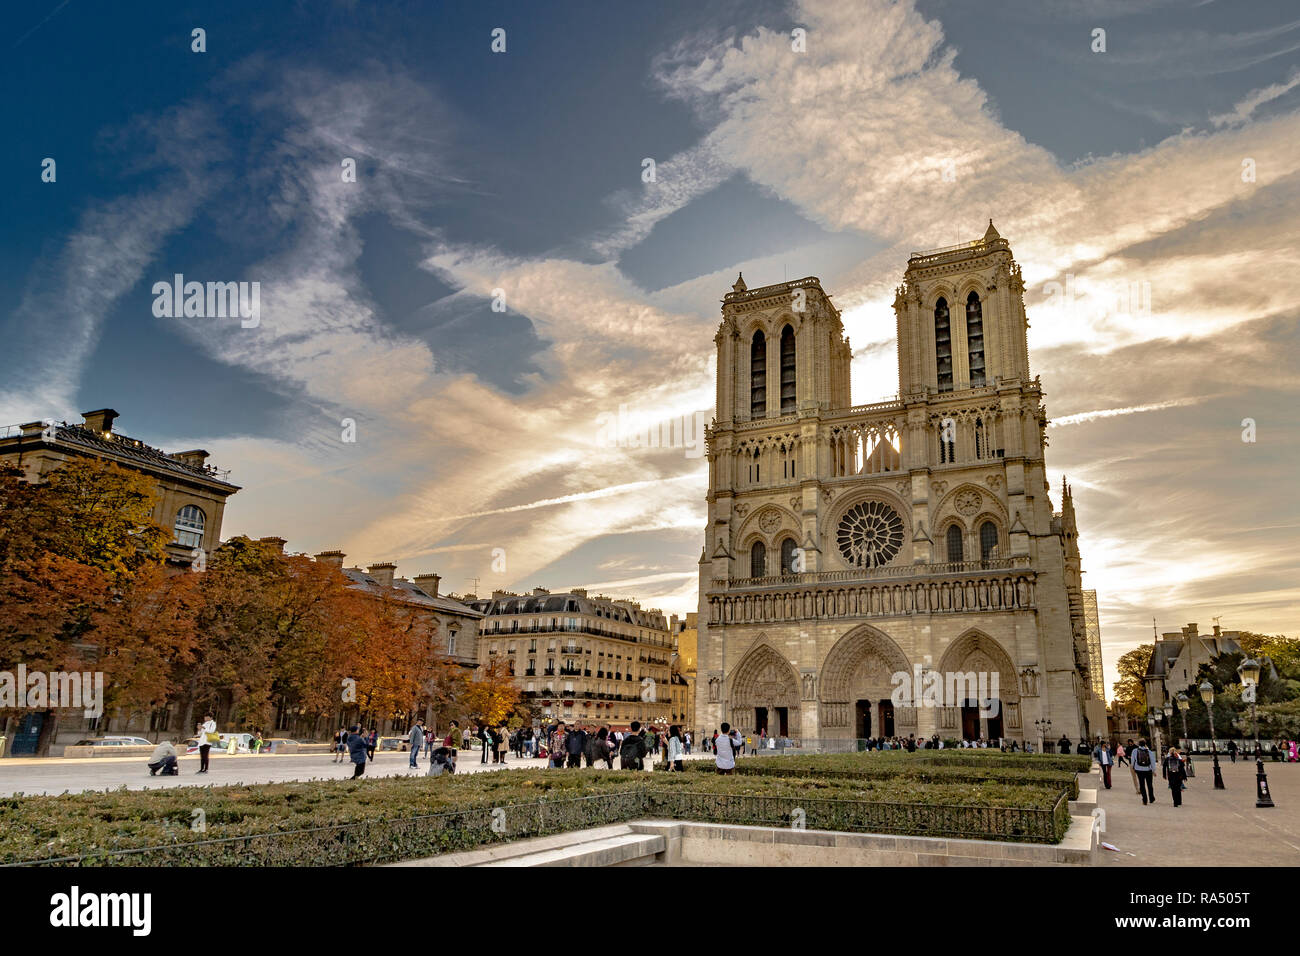 Cattedrale di Notre Dame de Paris - noto anche come la cattedrale di Notre Dame a medievale cattedrale cattolica sull'Île de la Cité nel quarto arrondissement di Parigi Foto Stock